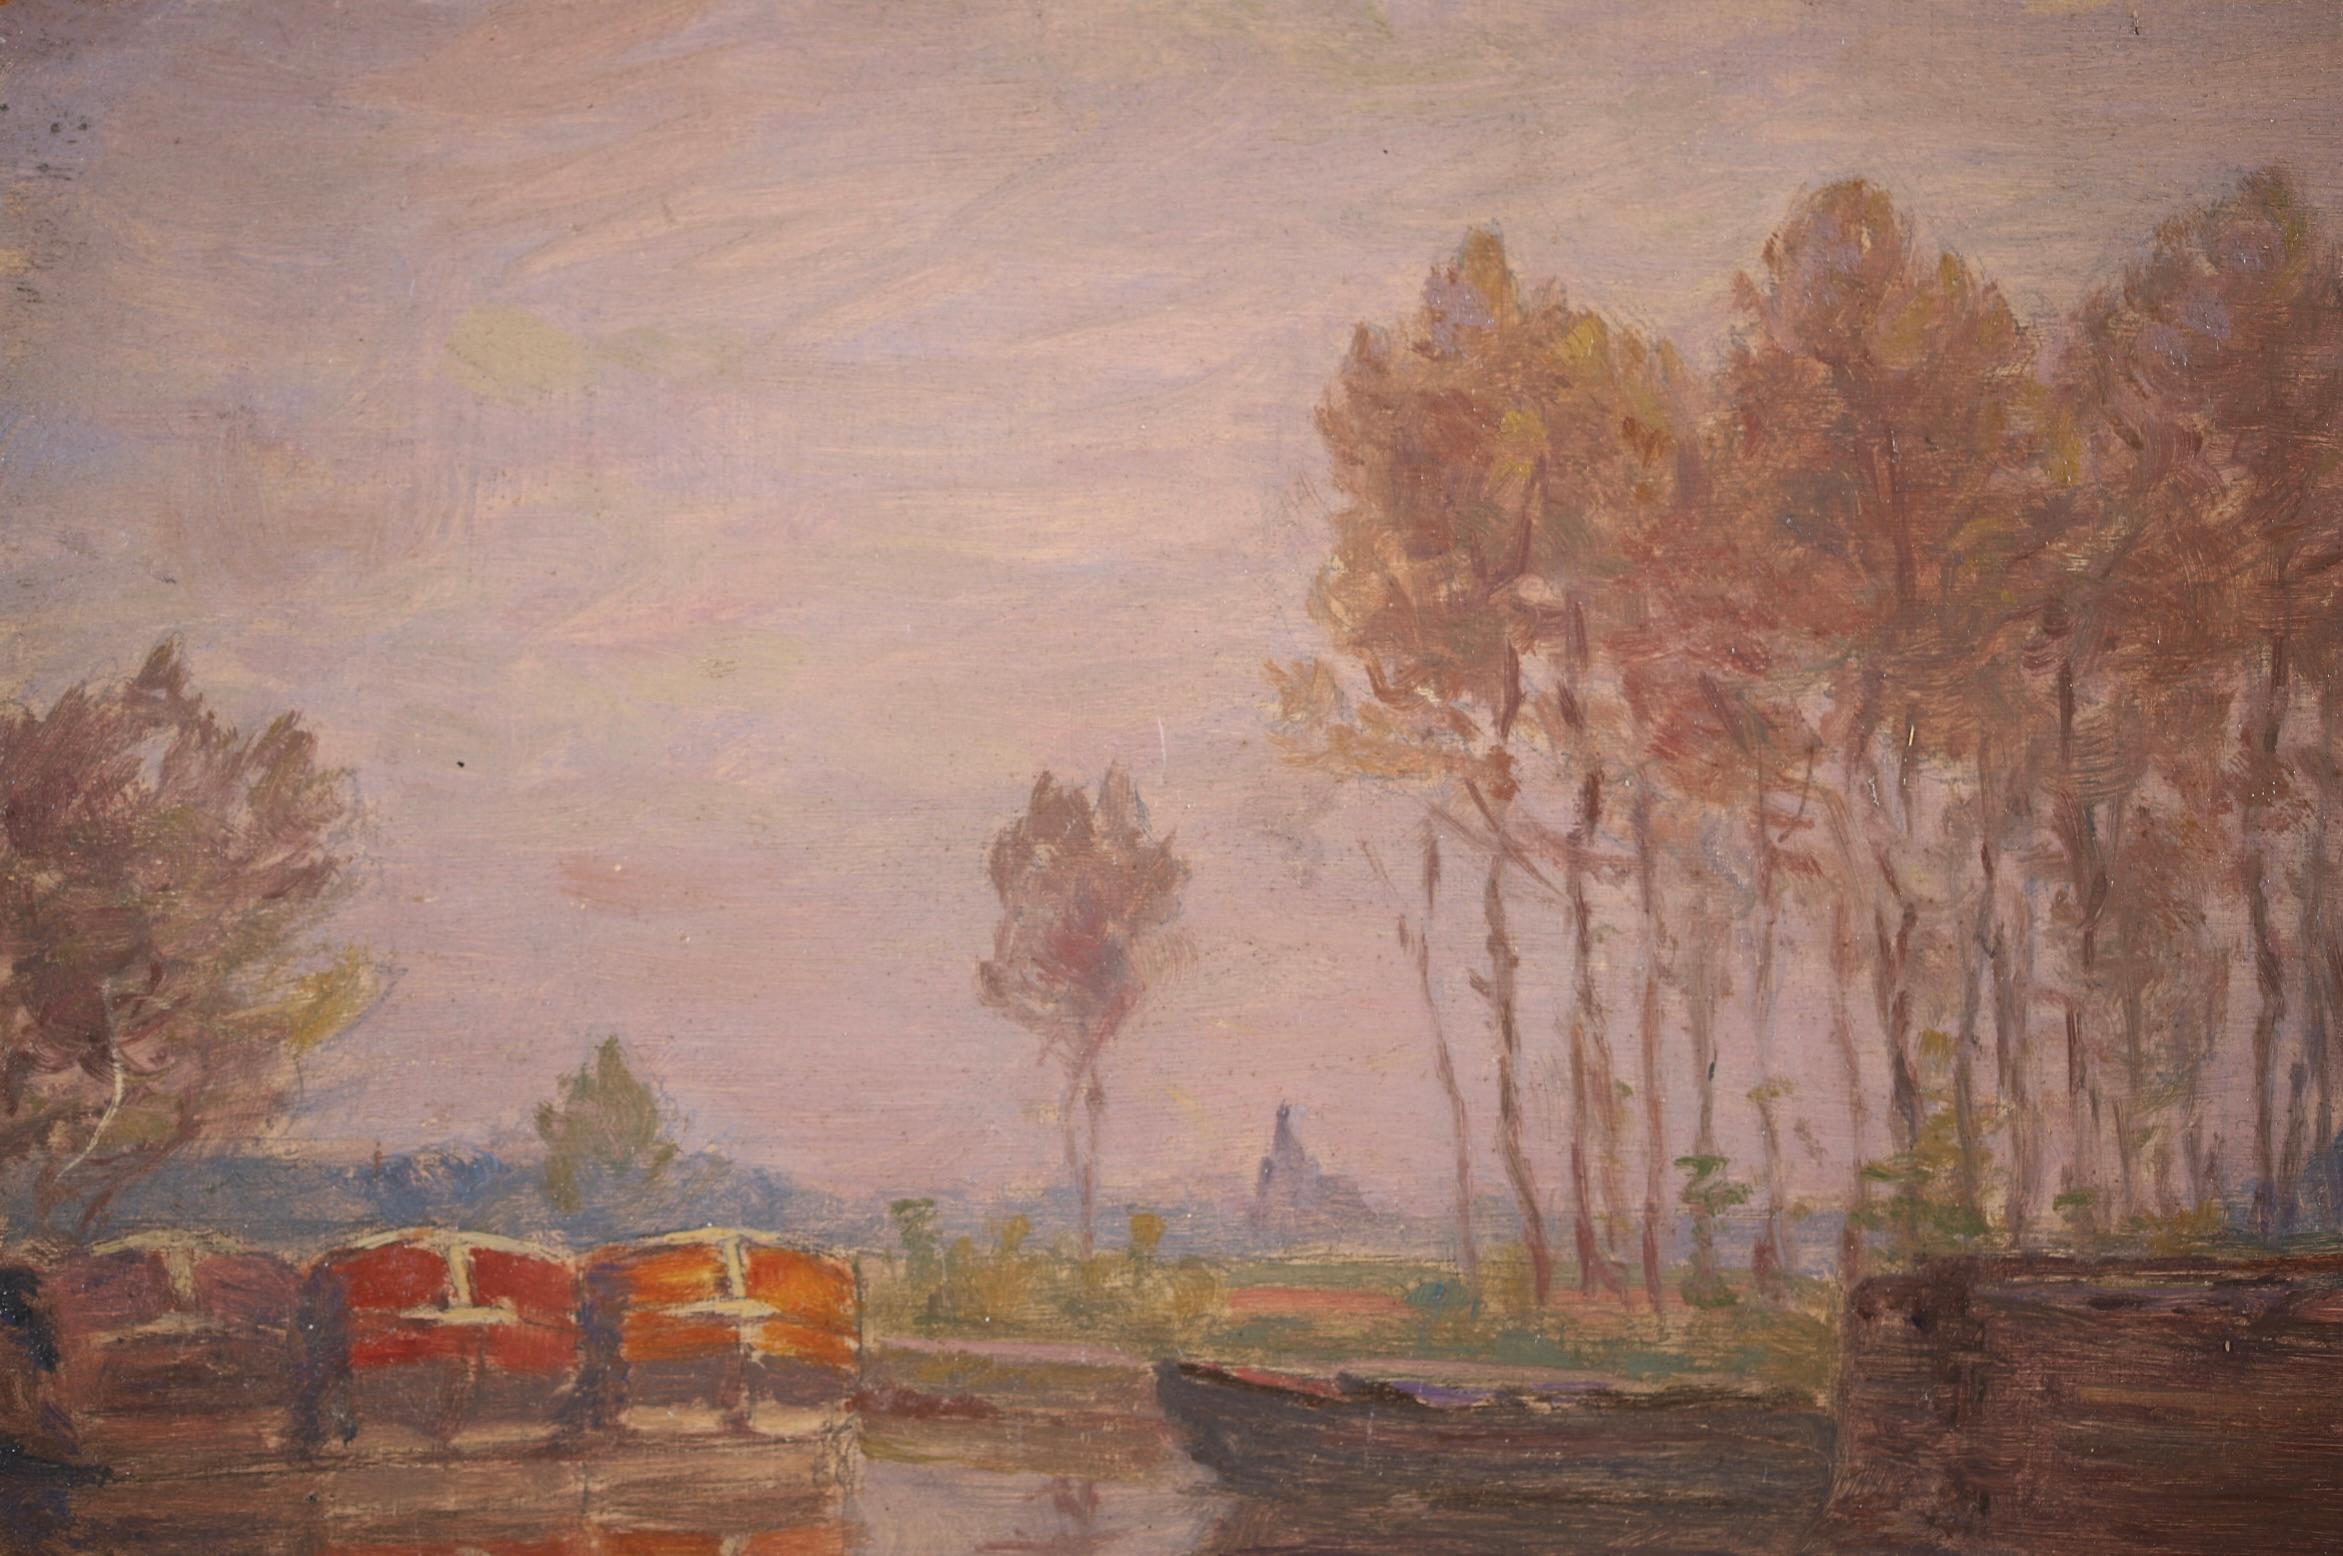 Barges on the River - Impressionist Oil, Boats in Landscape by Henri Duhem 1